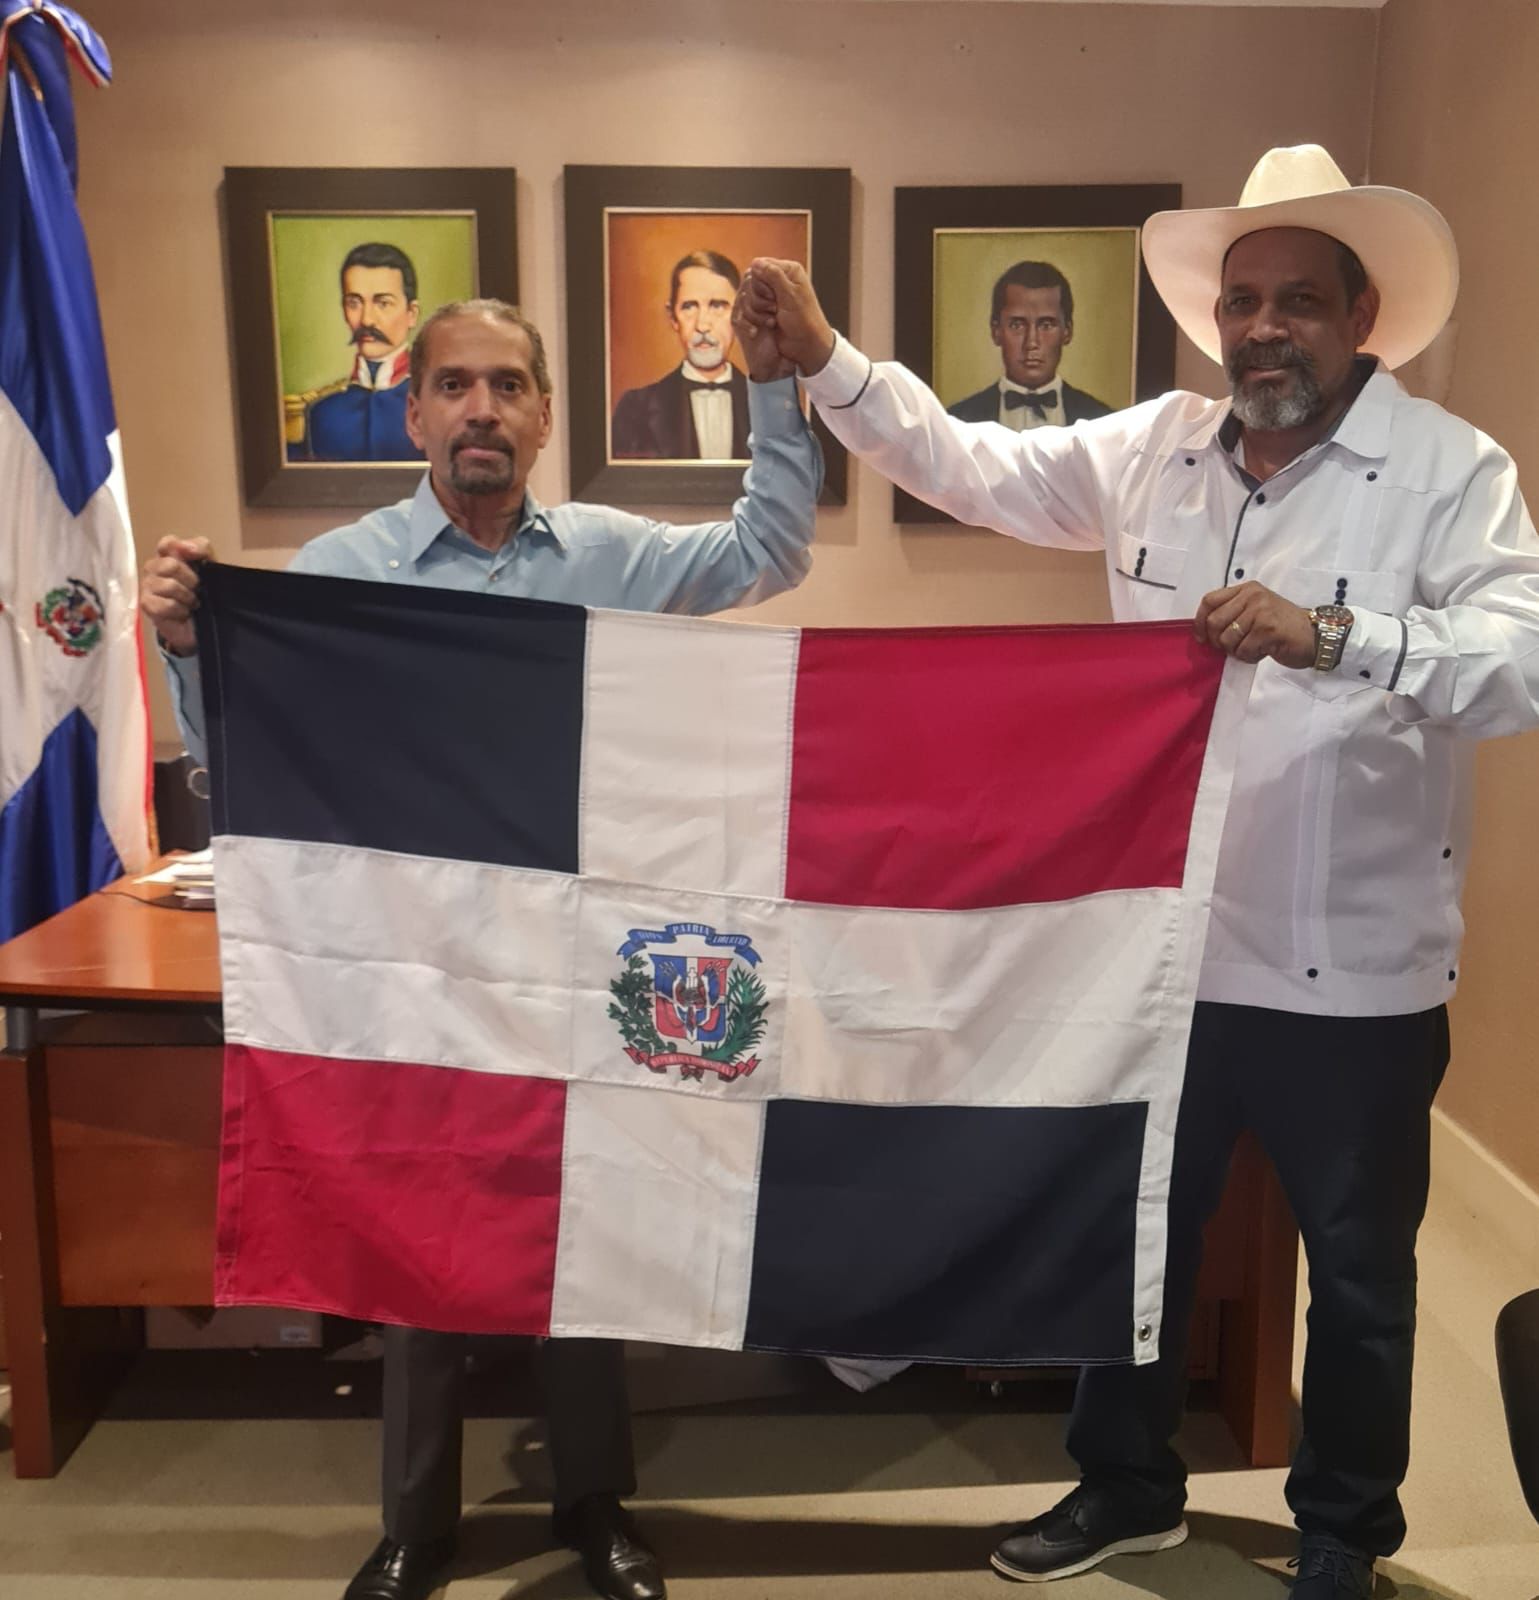 El presidente de Efemérides Patrias, Juan Pablo Uribe, se reúne  con el alcalde de Dajabon, Santiago Riverón, hablaron de la frontera y recibió símbolos Patrios para el acto artístico nacionalista de este sábado 30 a la 7:00 P:m. en Dajabon.